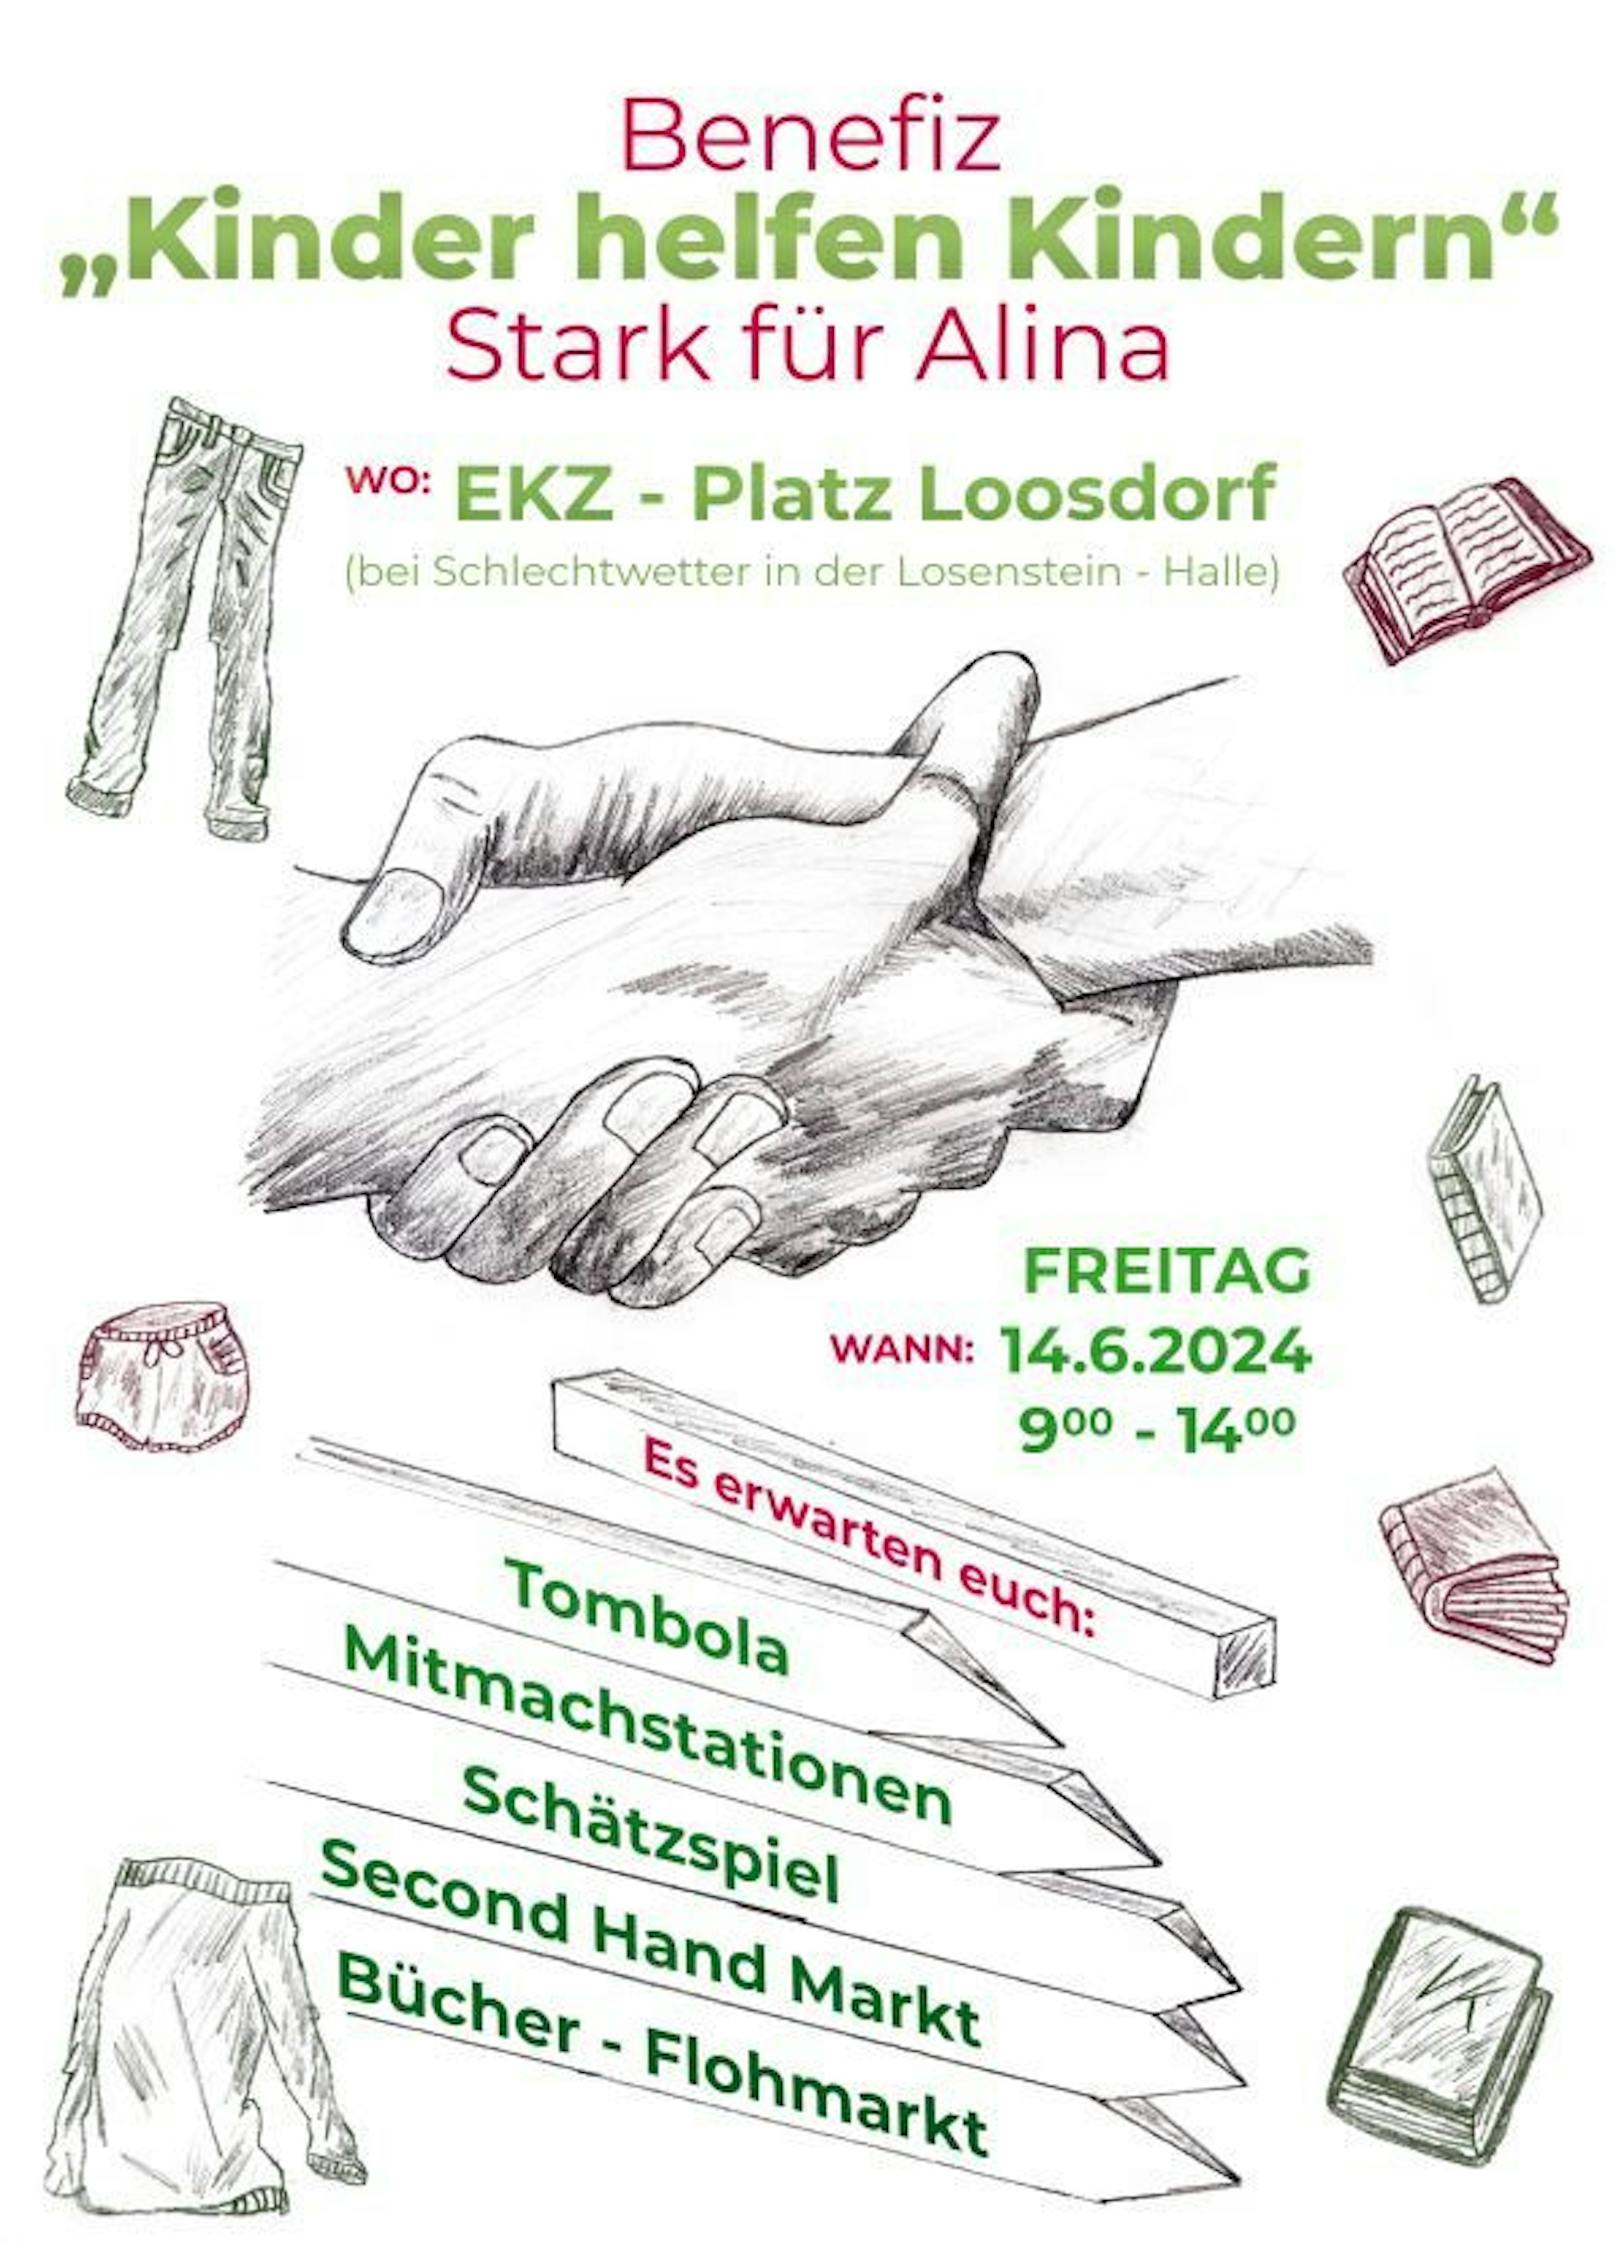 Stark für Alina - das Benefizevent findet am 14. Juni in Loosdorf statt.